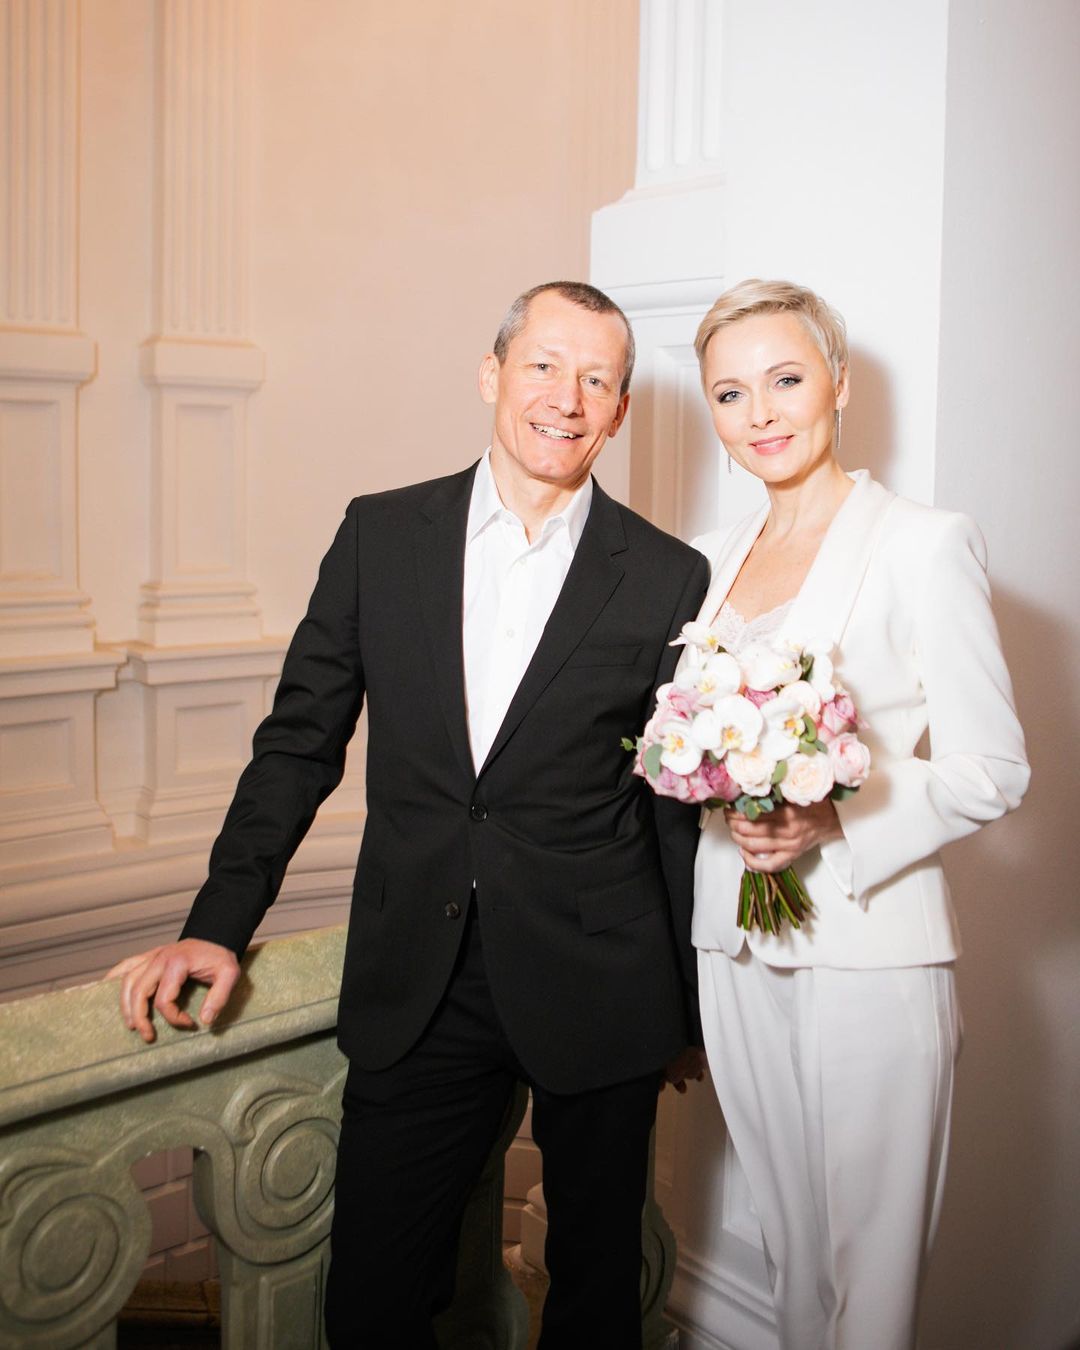 48-летняя Дарья Повереннова вышла замуж за вдовца-миллионера